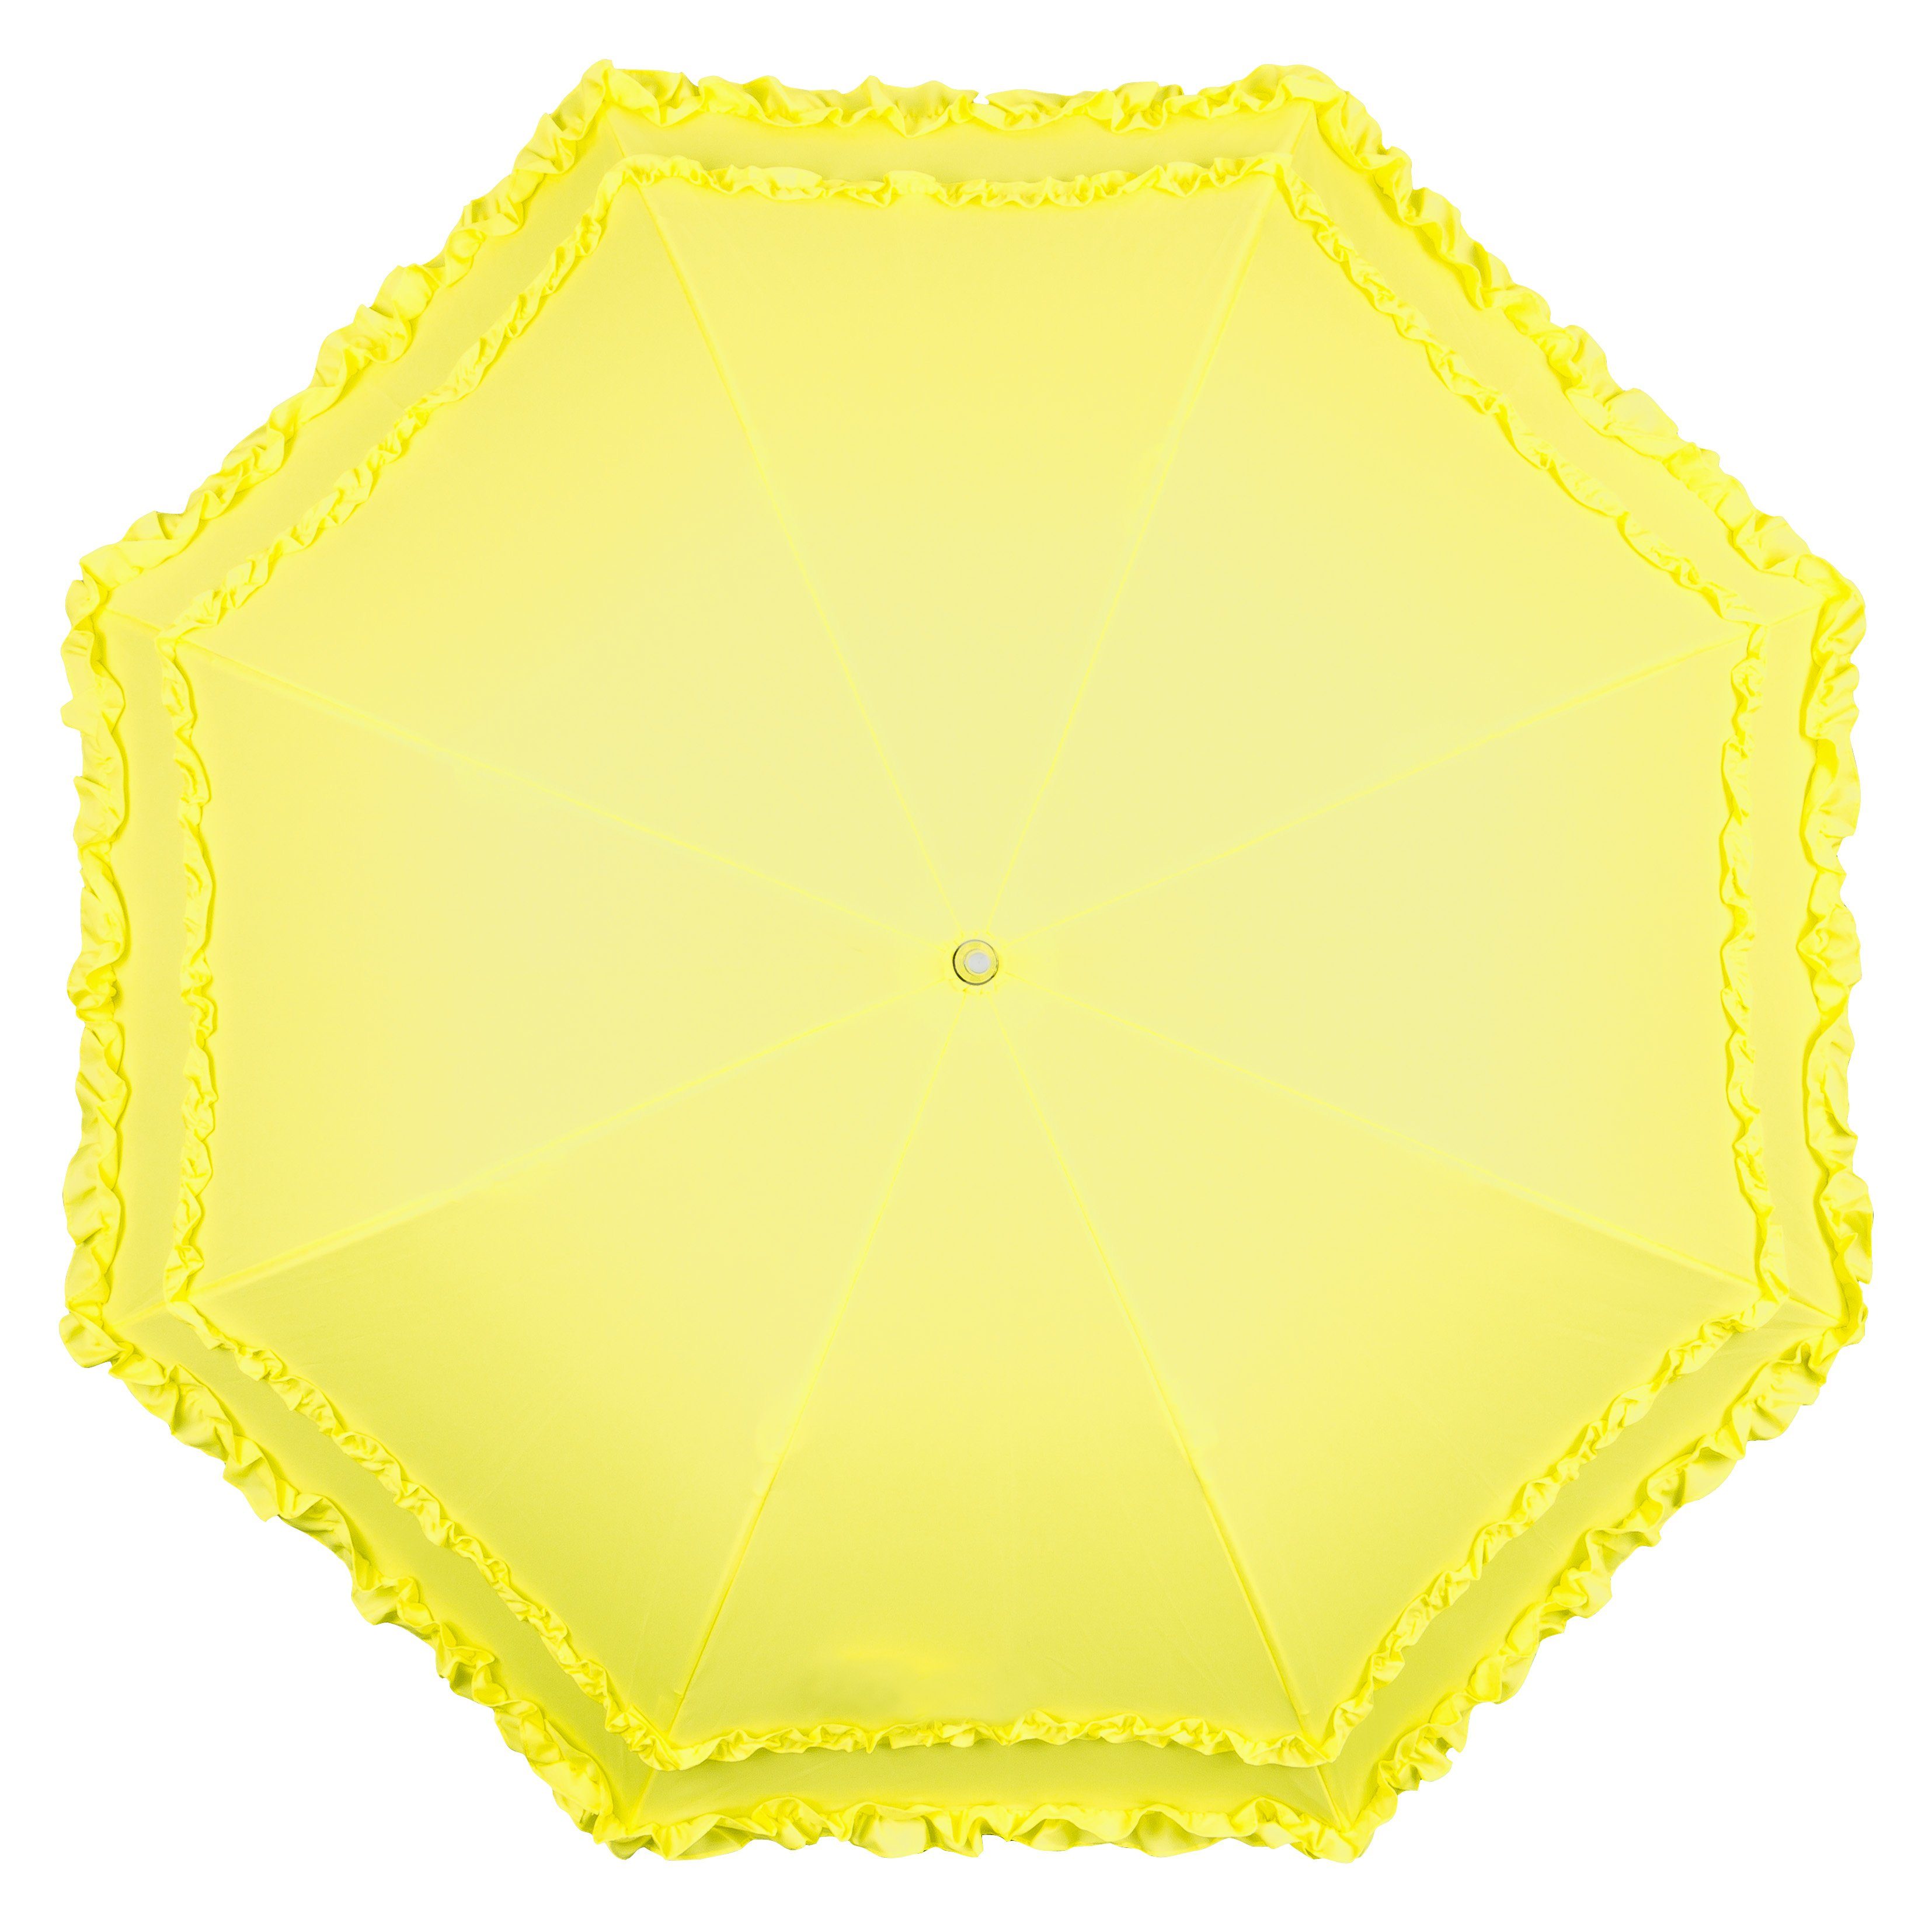 von Lilienfeld Stockregenschirm Regenschirm Sonnenschirm Mary, gelb Rüschenkanten Hochzeitsschirm zwei